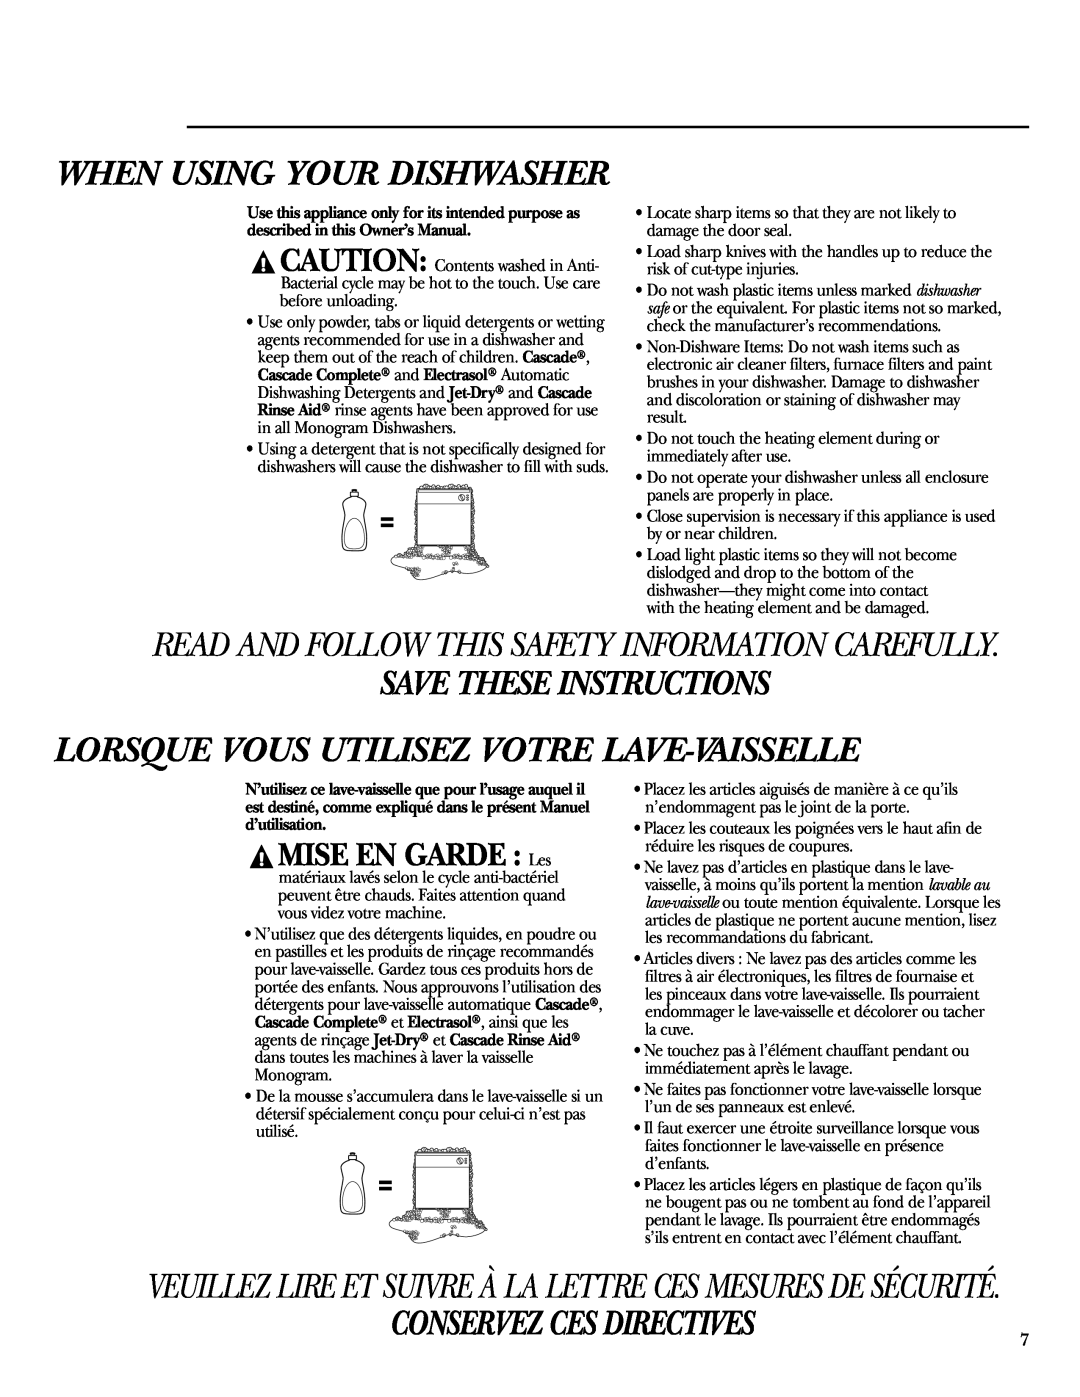 GE zbd6800k owner manual When Using Your Dishwasher, Save These Instructions Lorsque Vous Utilisez Votre Lave-Vaisselle 